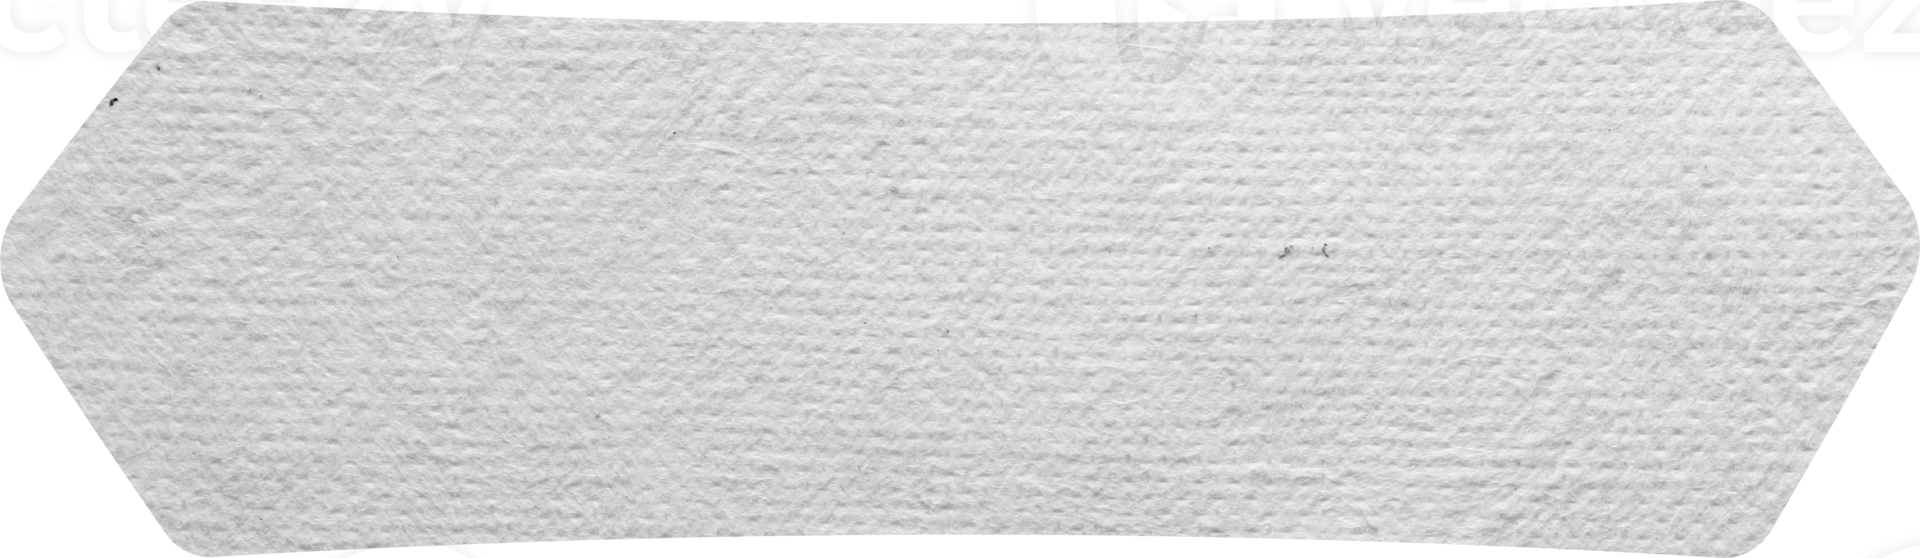 etiqueta de papel rótulos fundo de textura de papel, caminhos de recorte isolados para trabalho de design espaço livre vazio png